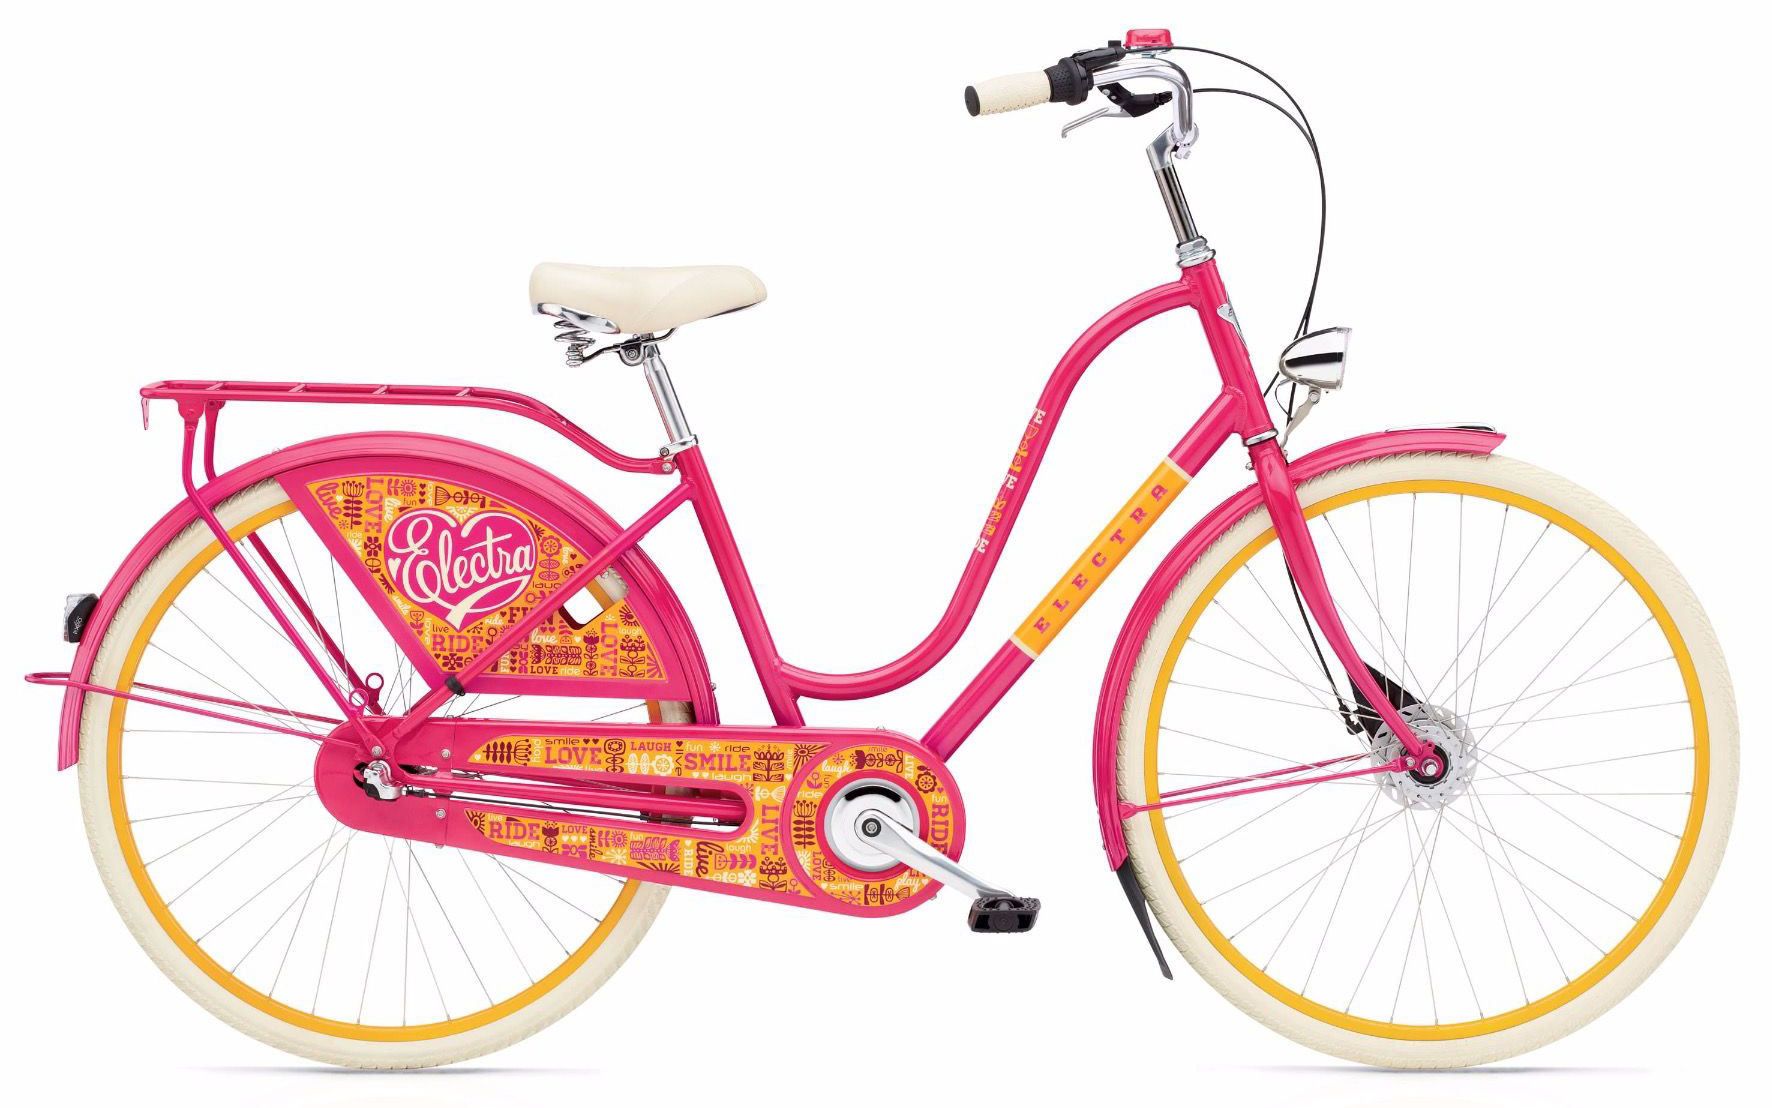  Отзывы о Женском велосипеде Electra Amsterdam Fashion 7i Joyride Ladies 2019